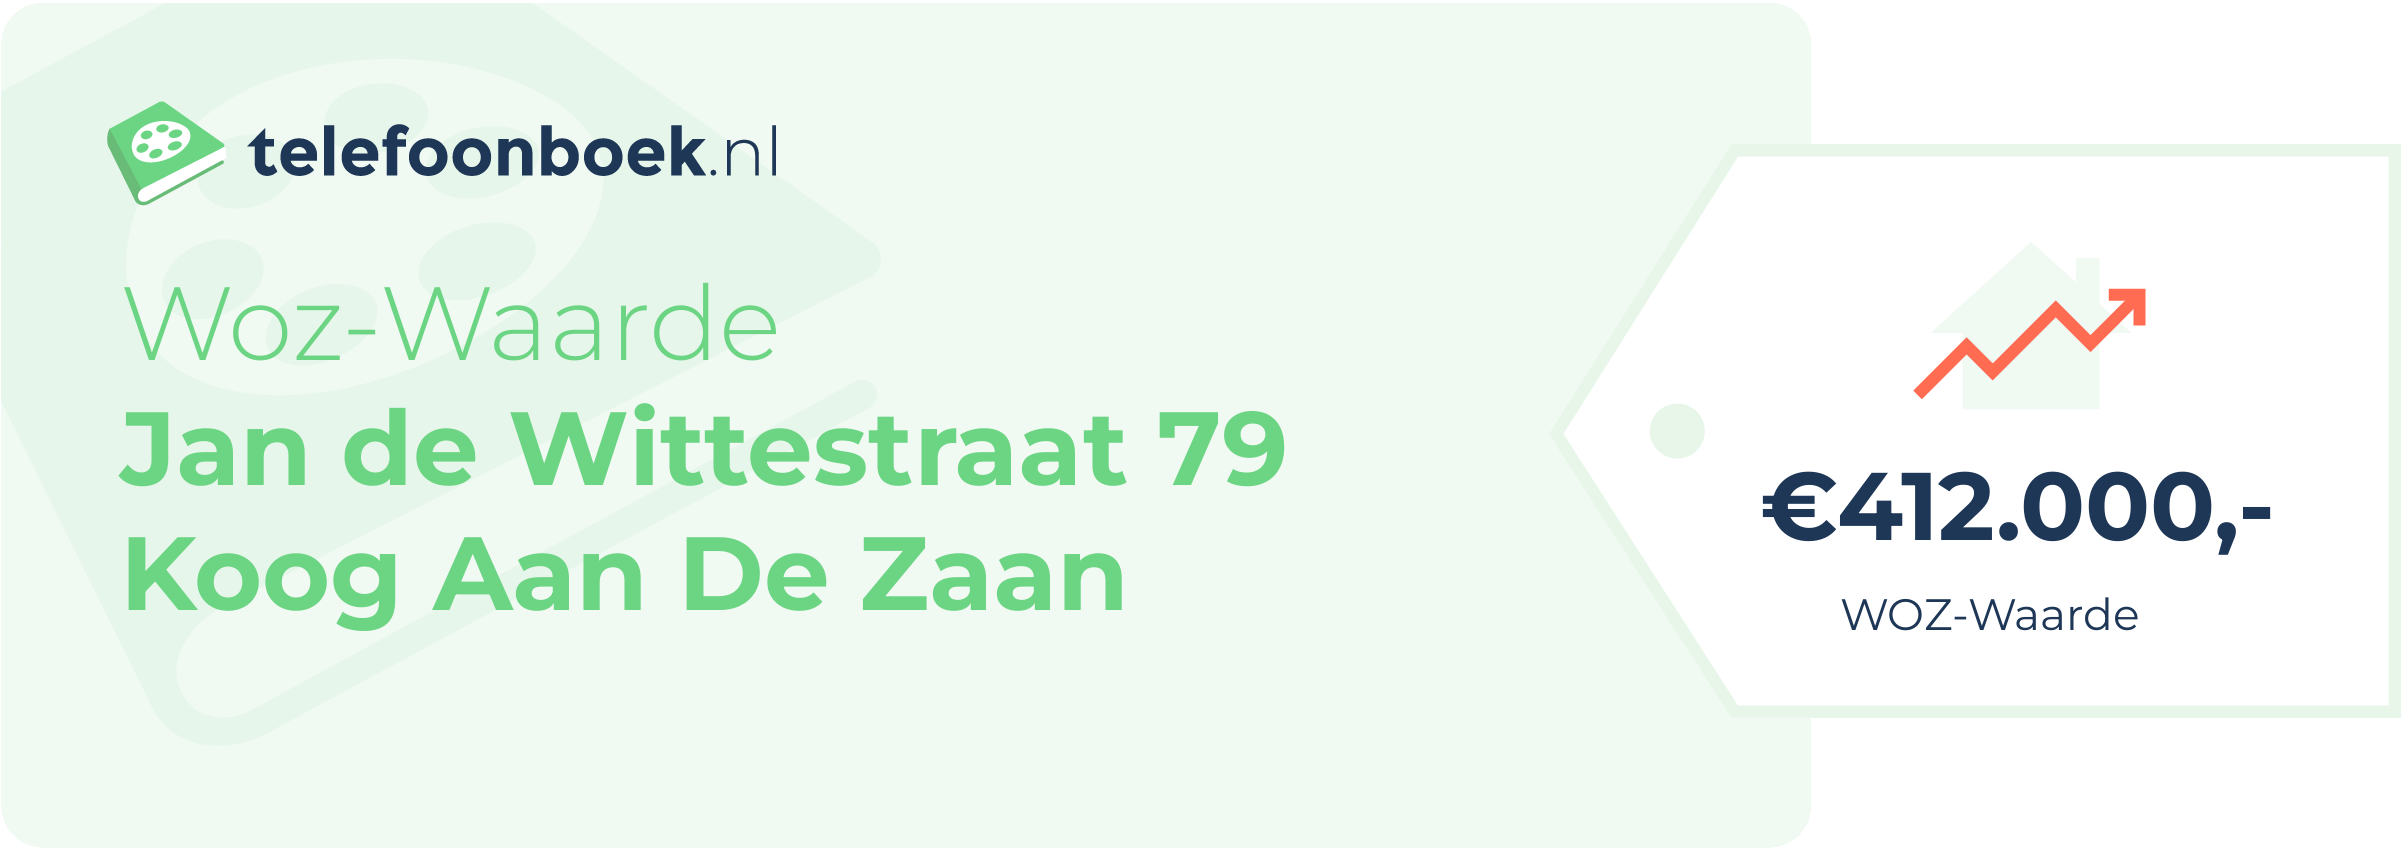 WOZ-waarde Jan De Wittestraat 79 Koog Aan De Zaan